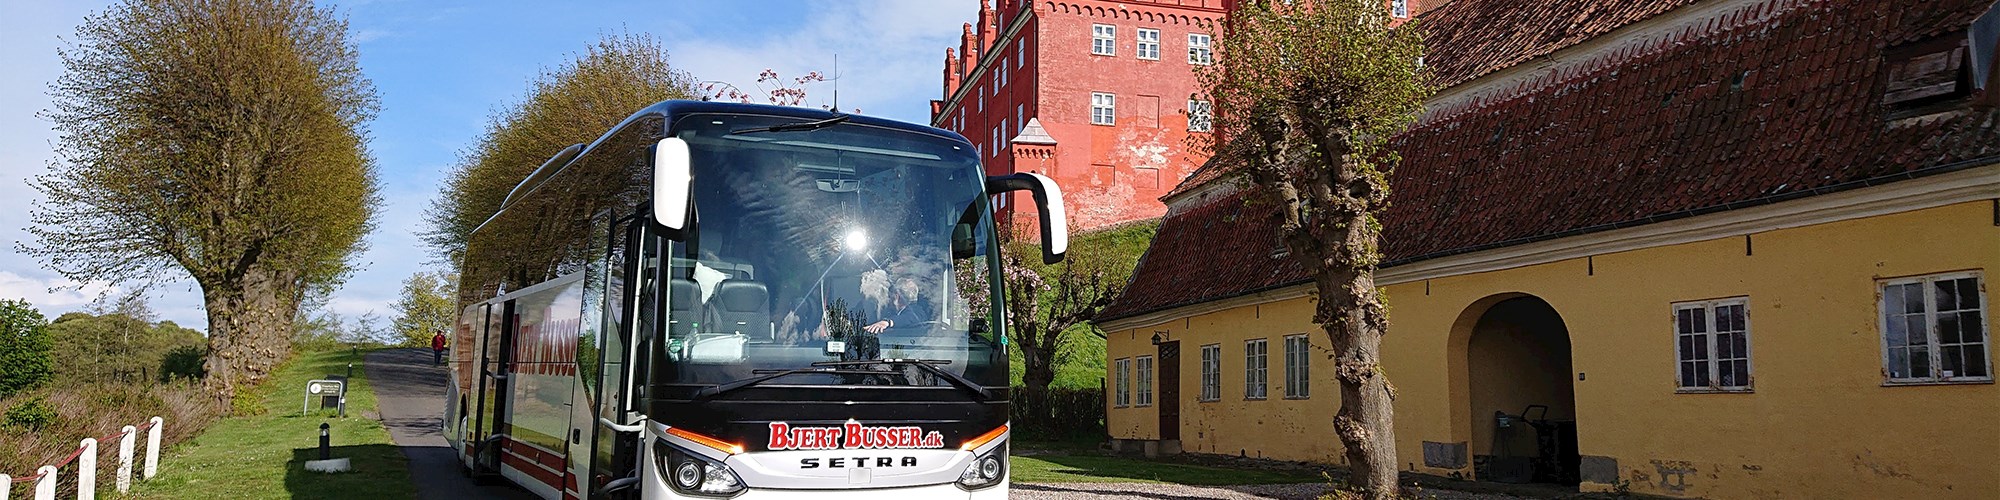 Bus der holder foran Tranekær Slot